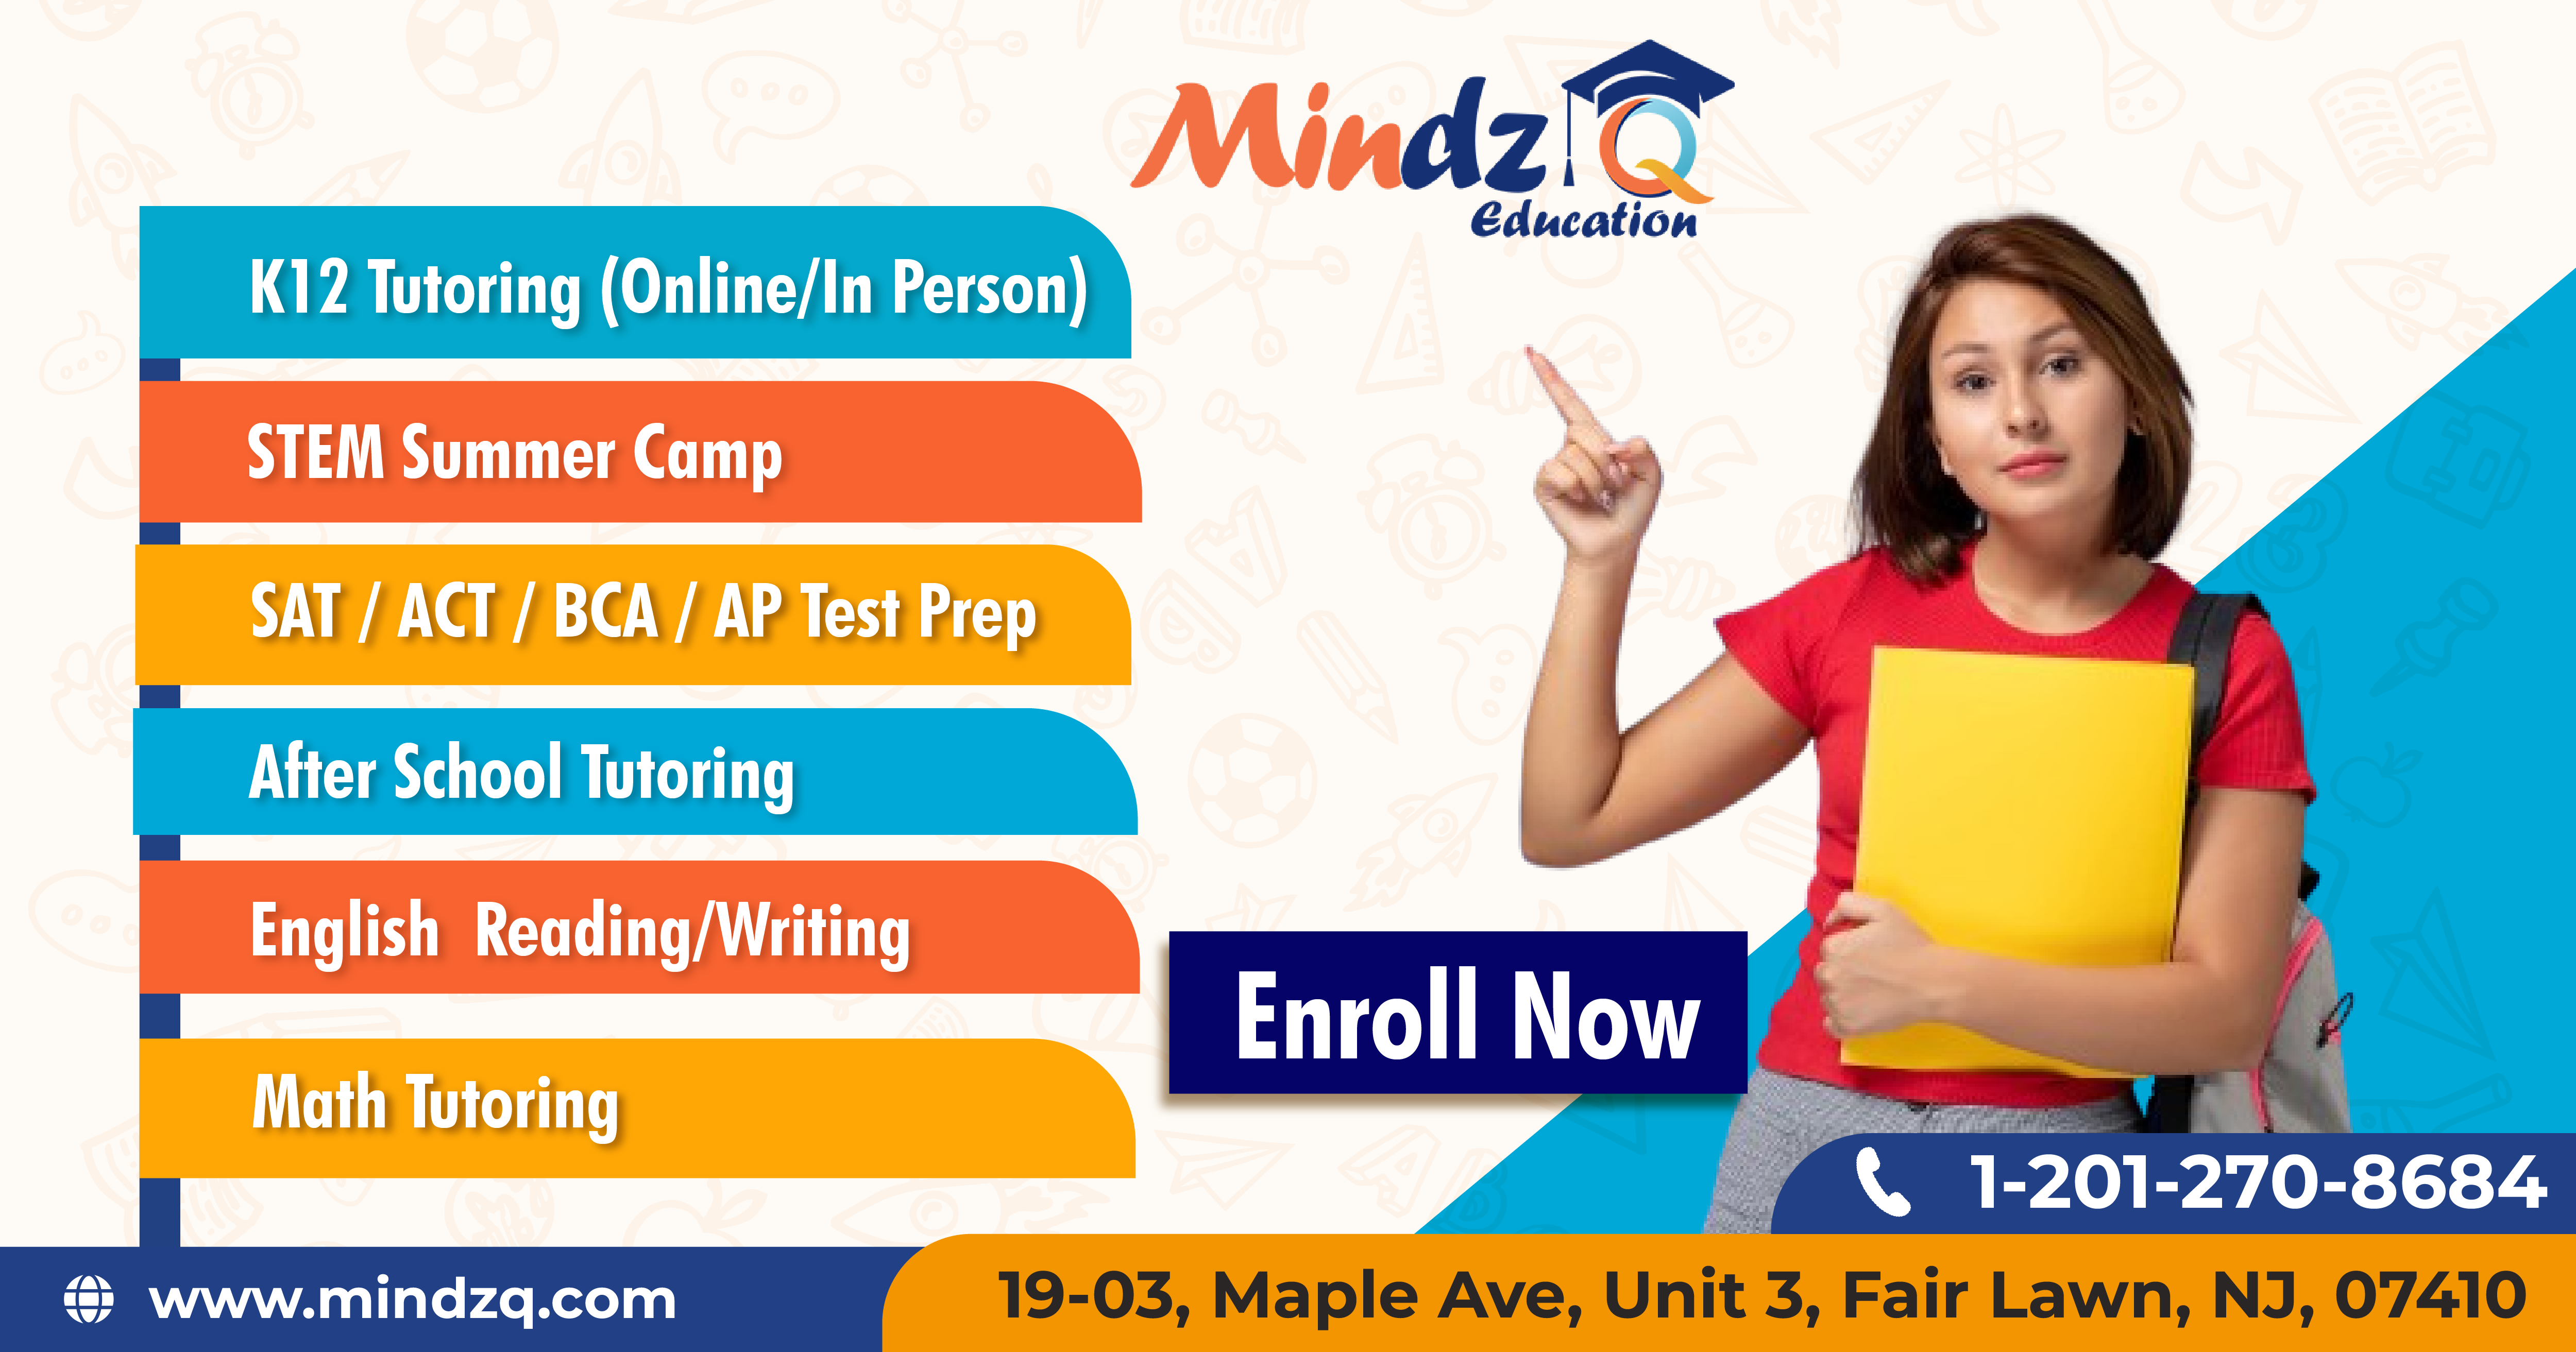 SAT Prep Courses NJ | Mindzq Education